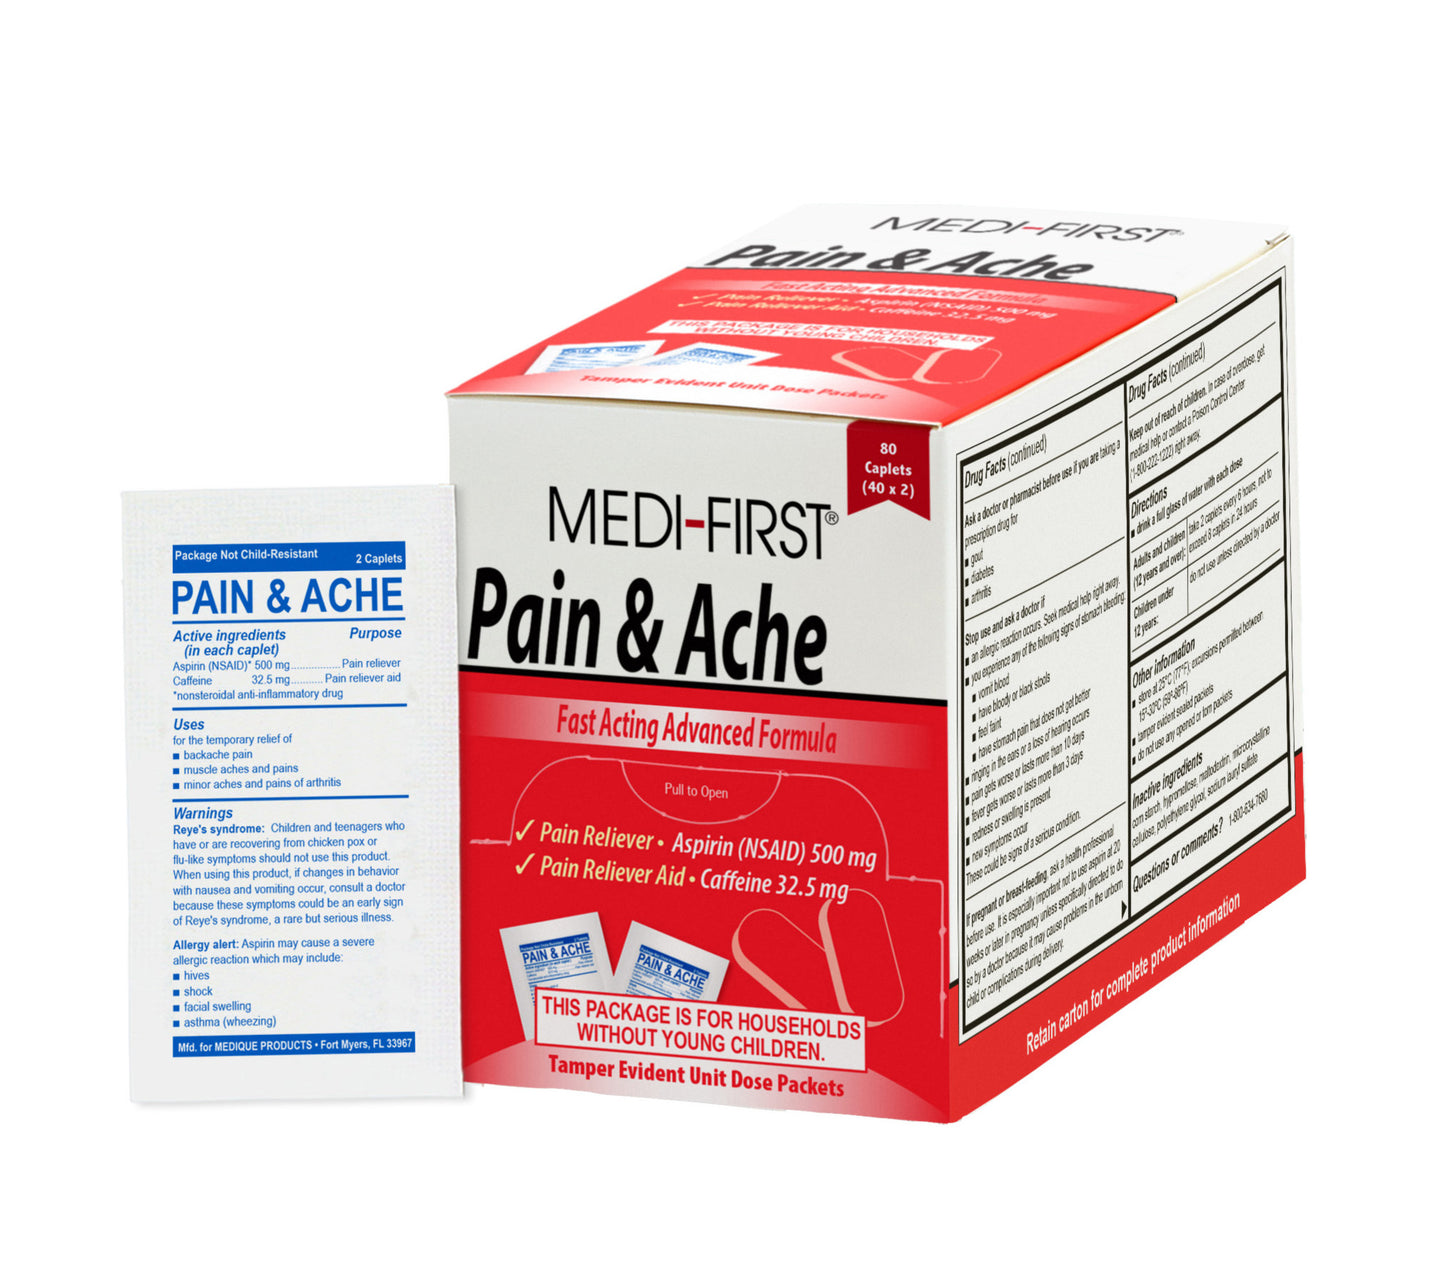 Pain & Ache Caplets